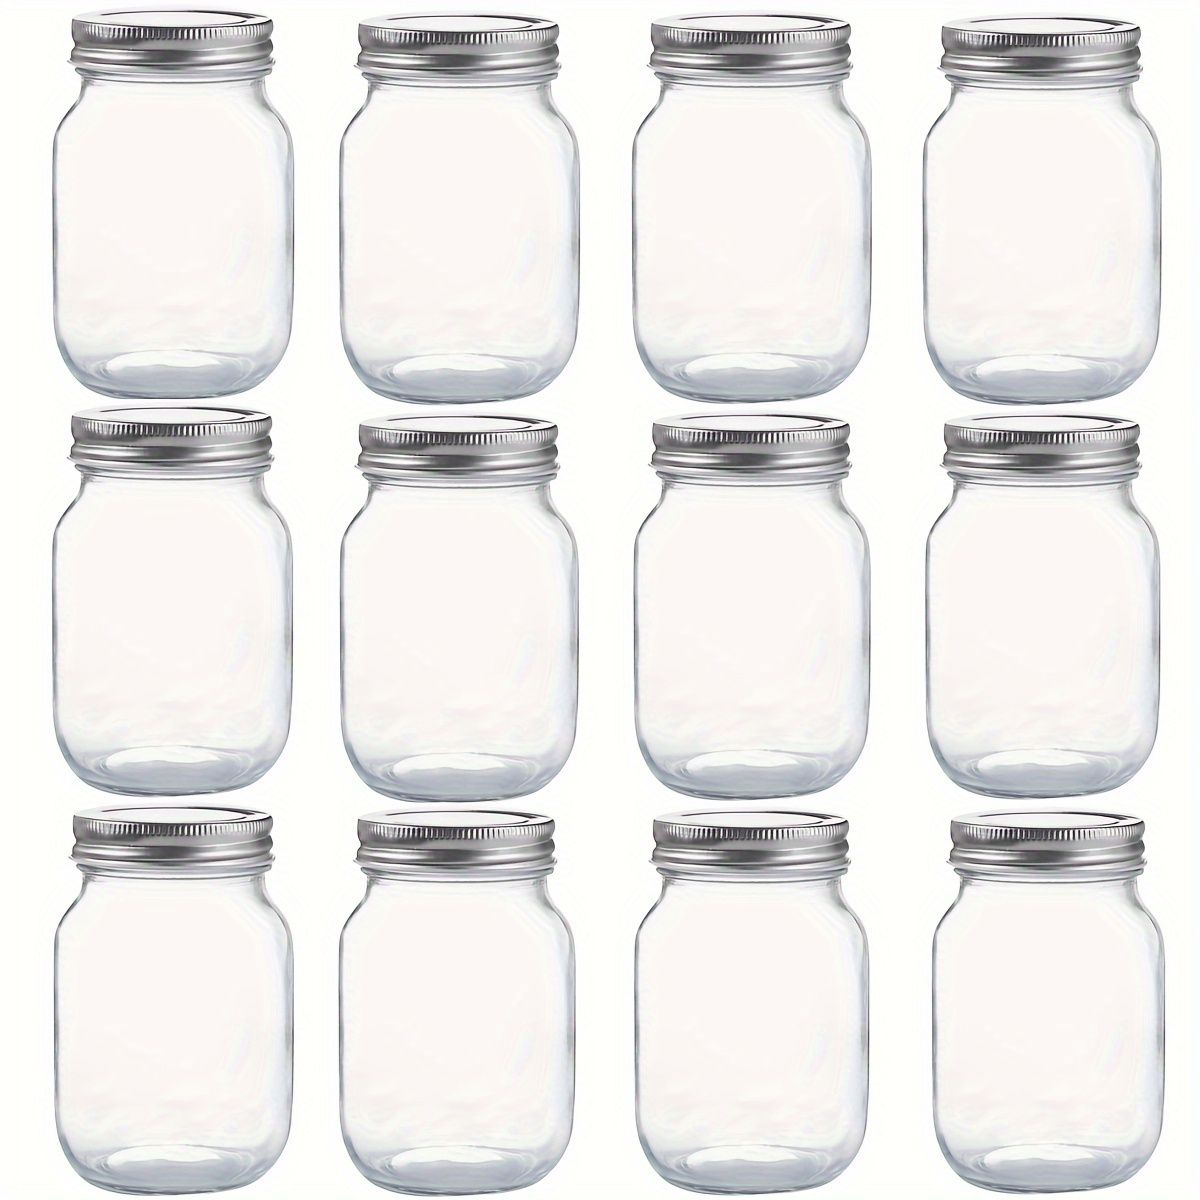 Envases de Vidrio para uso alimentario mermelada, Salsa, el